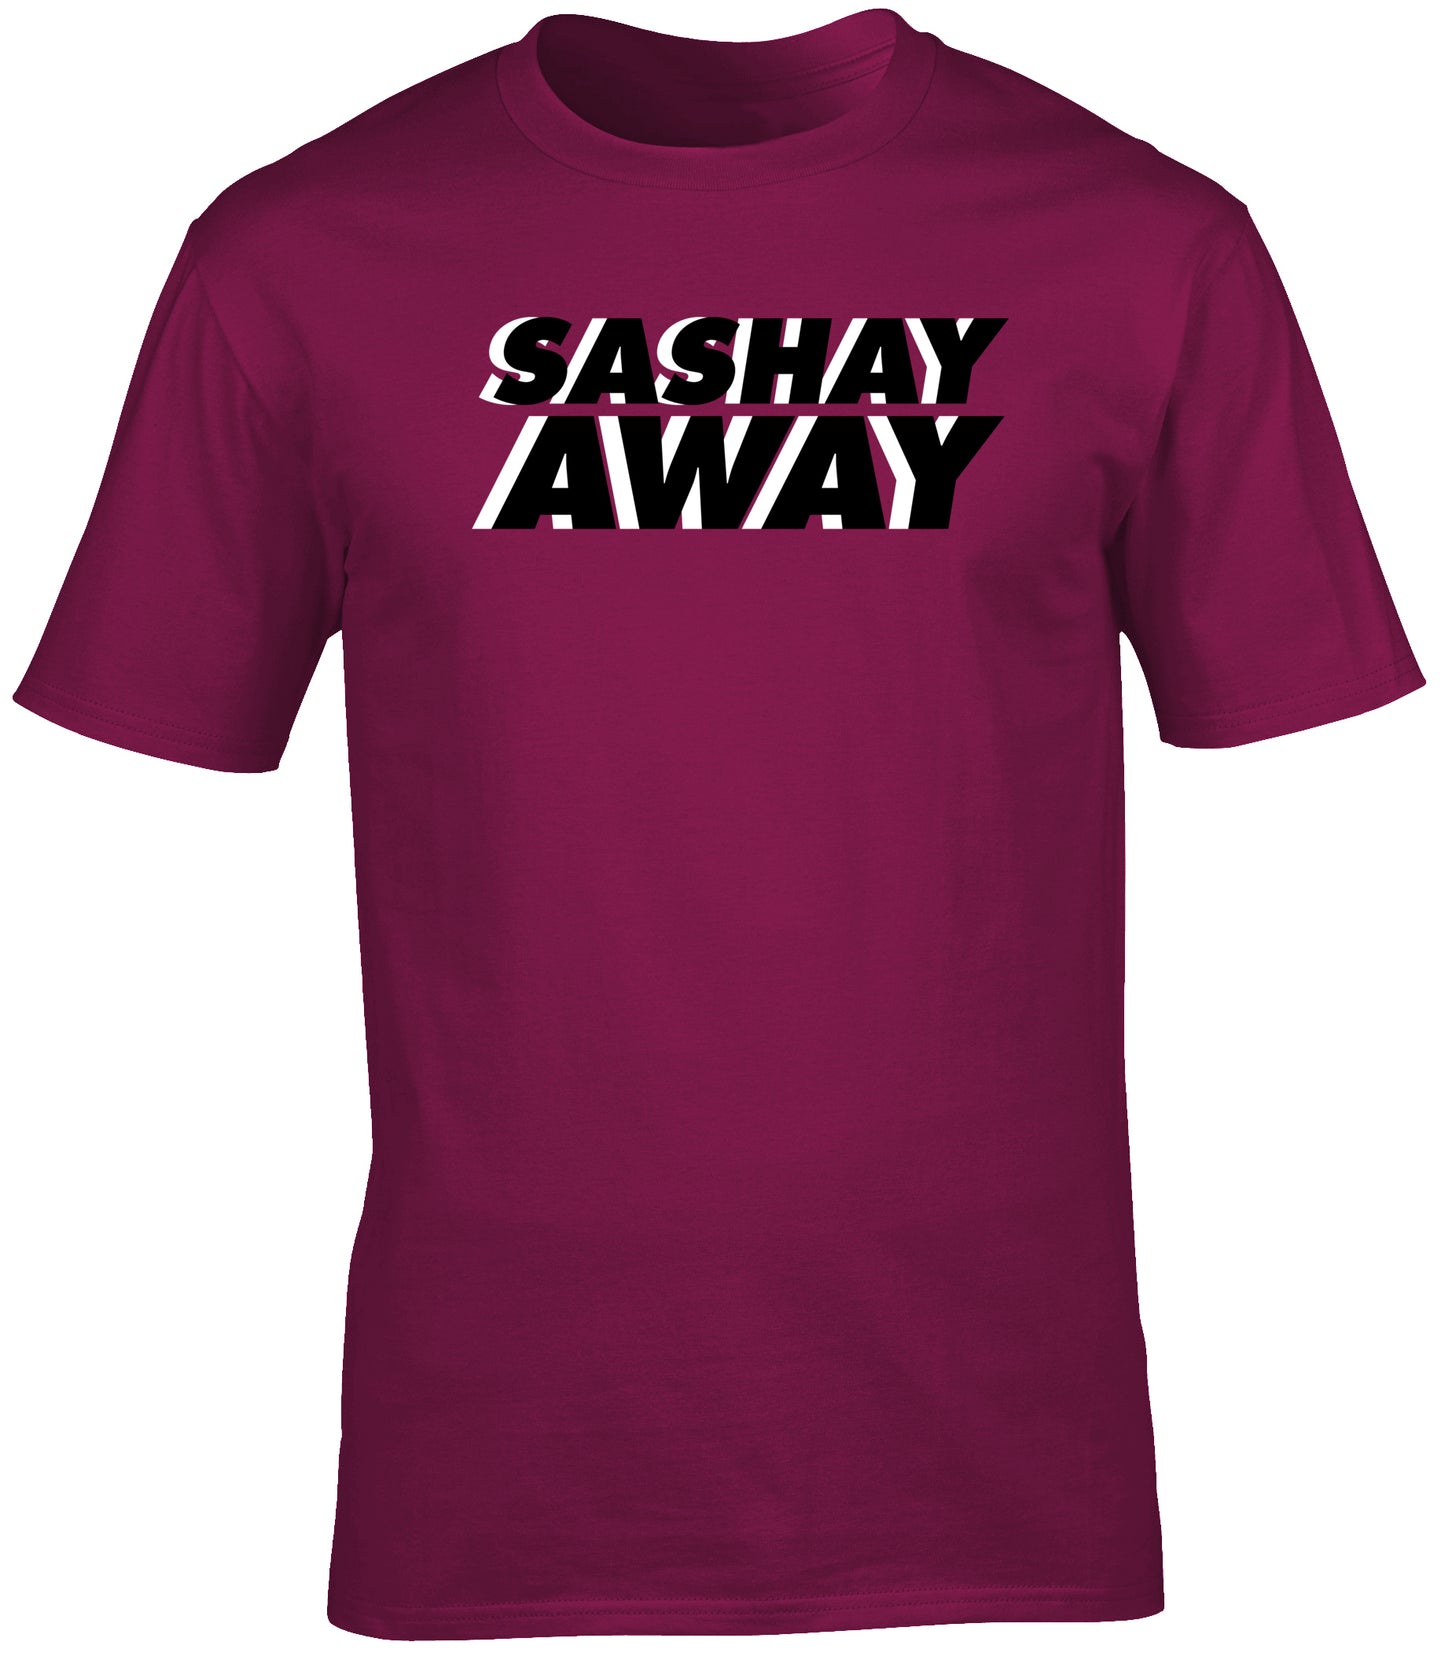 Sashay away unisex t-shirt